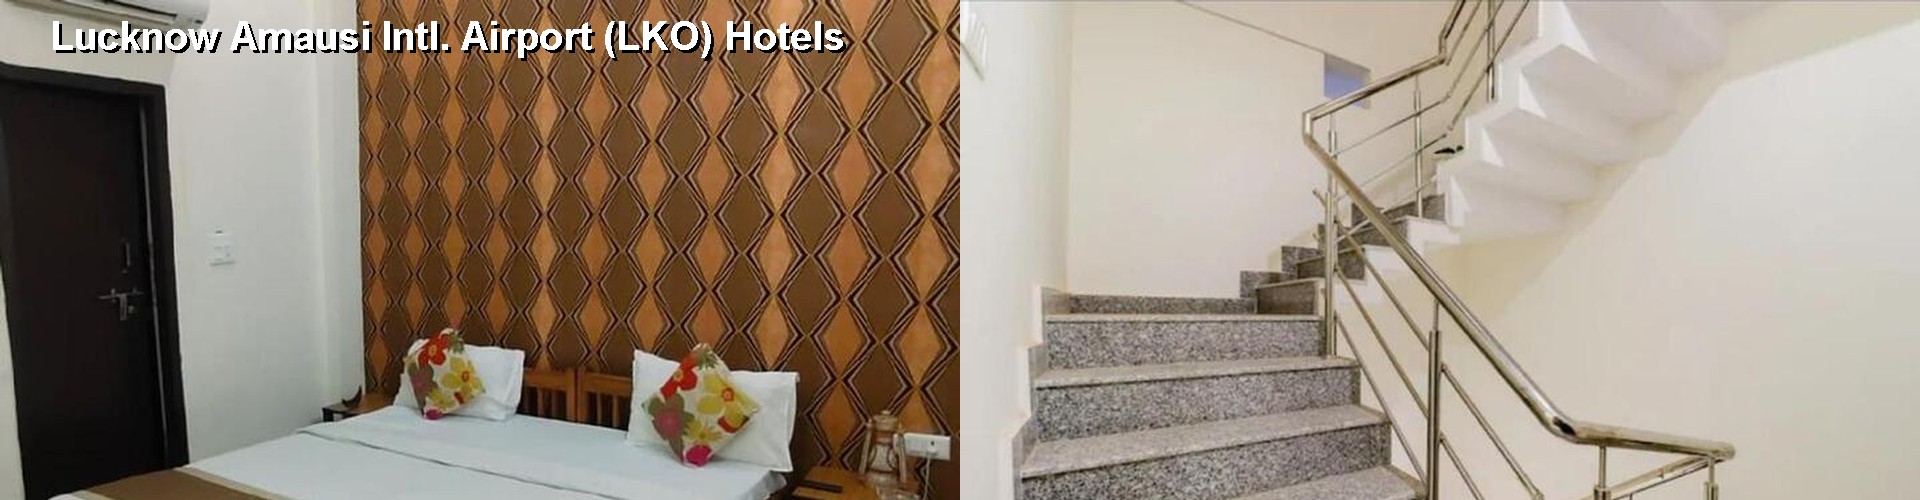 1 Best Hotels near Lucknow Amausi Intl. Airport (LKO)